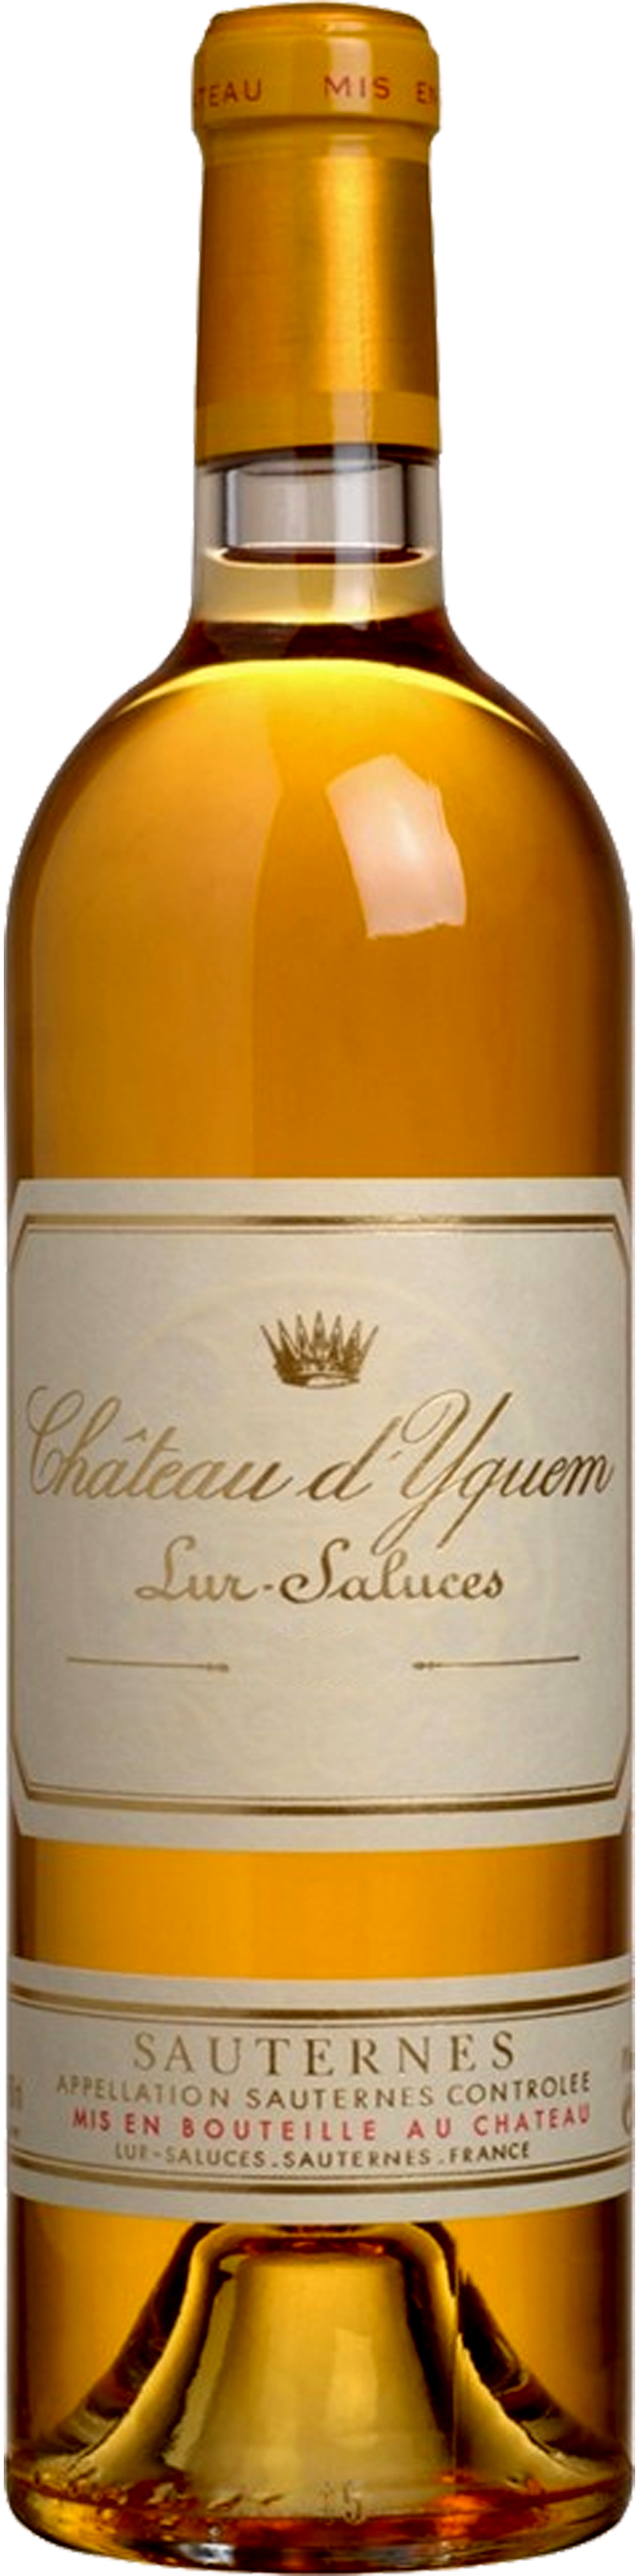 Bottle shot of 2007 Château d'Yquem, 1er Cru Supérieur Sauternes